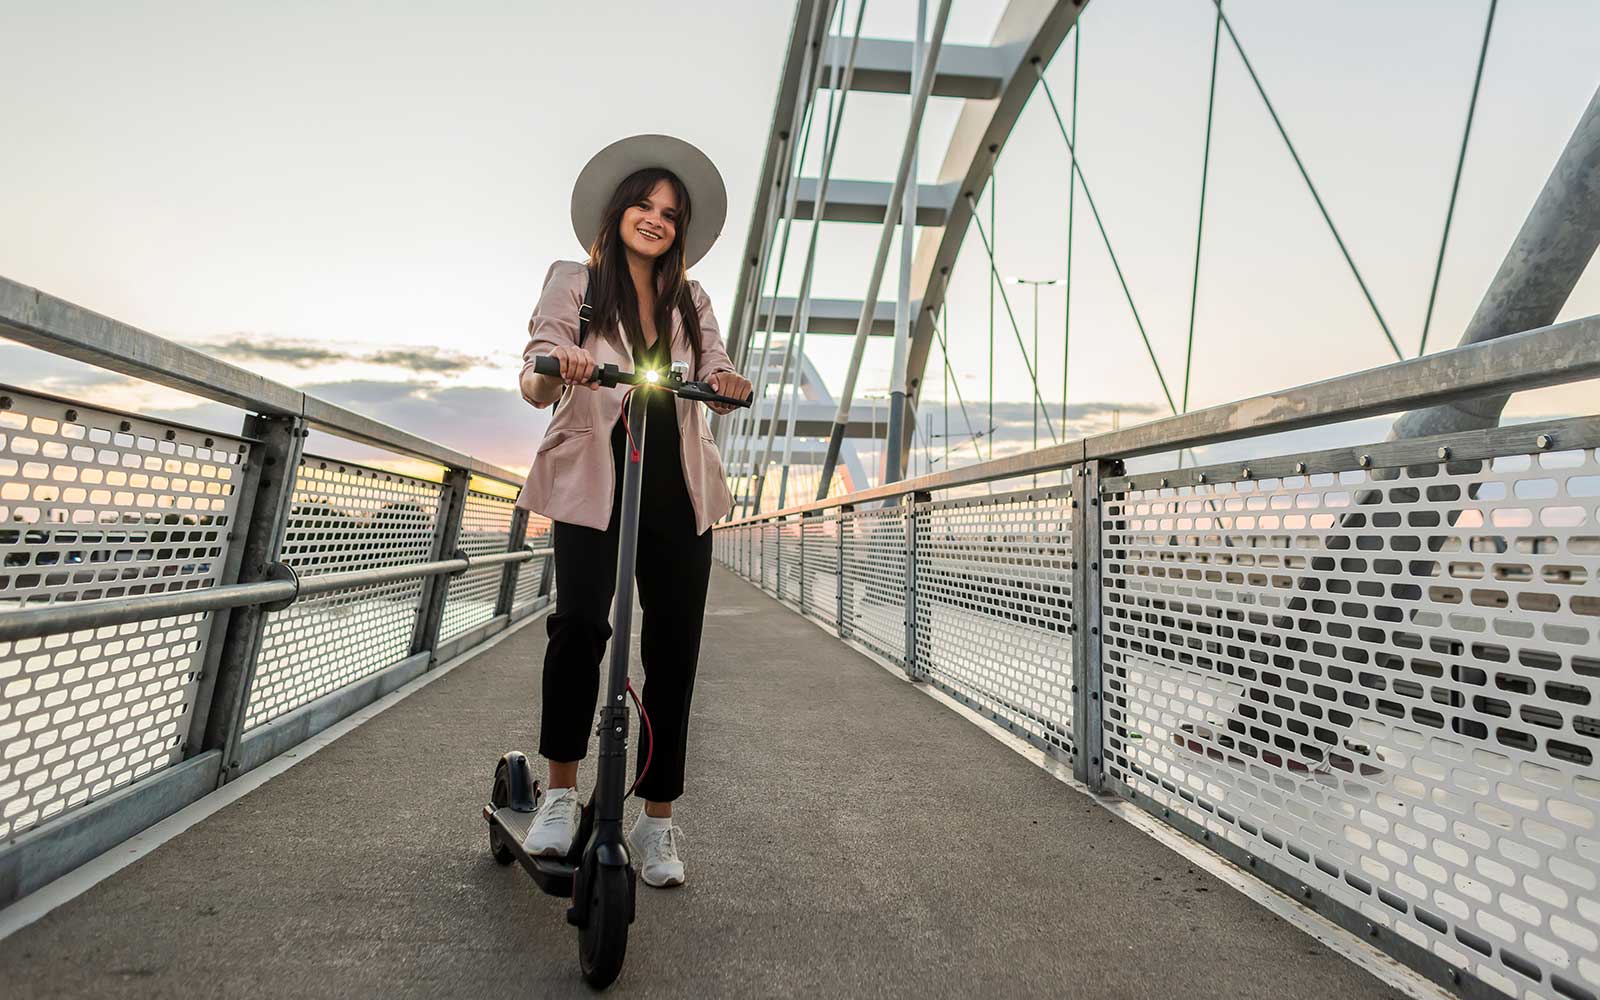 Eine lächelnde junge Frau steht auf einem E-Scooter auf einer Brücke